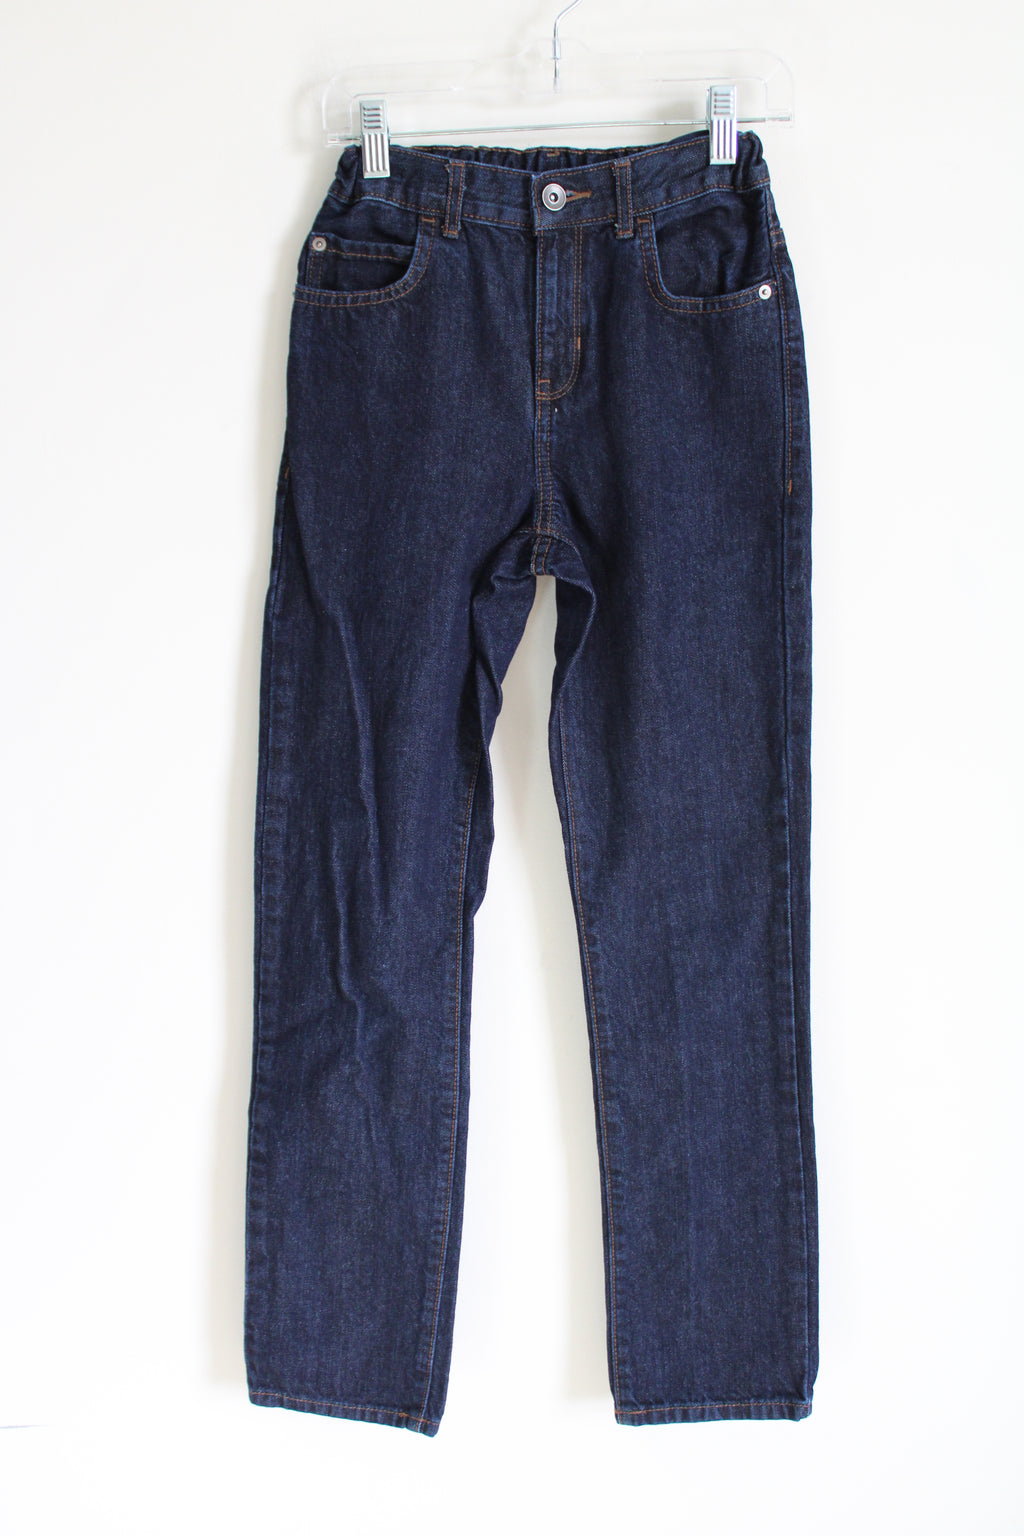 Children's Place Dark Wash Straight Fit Jeans | 12 Slim